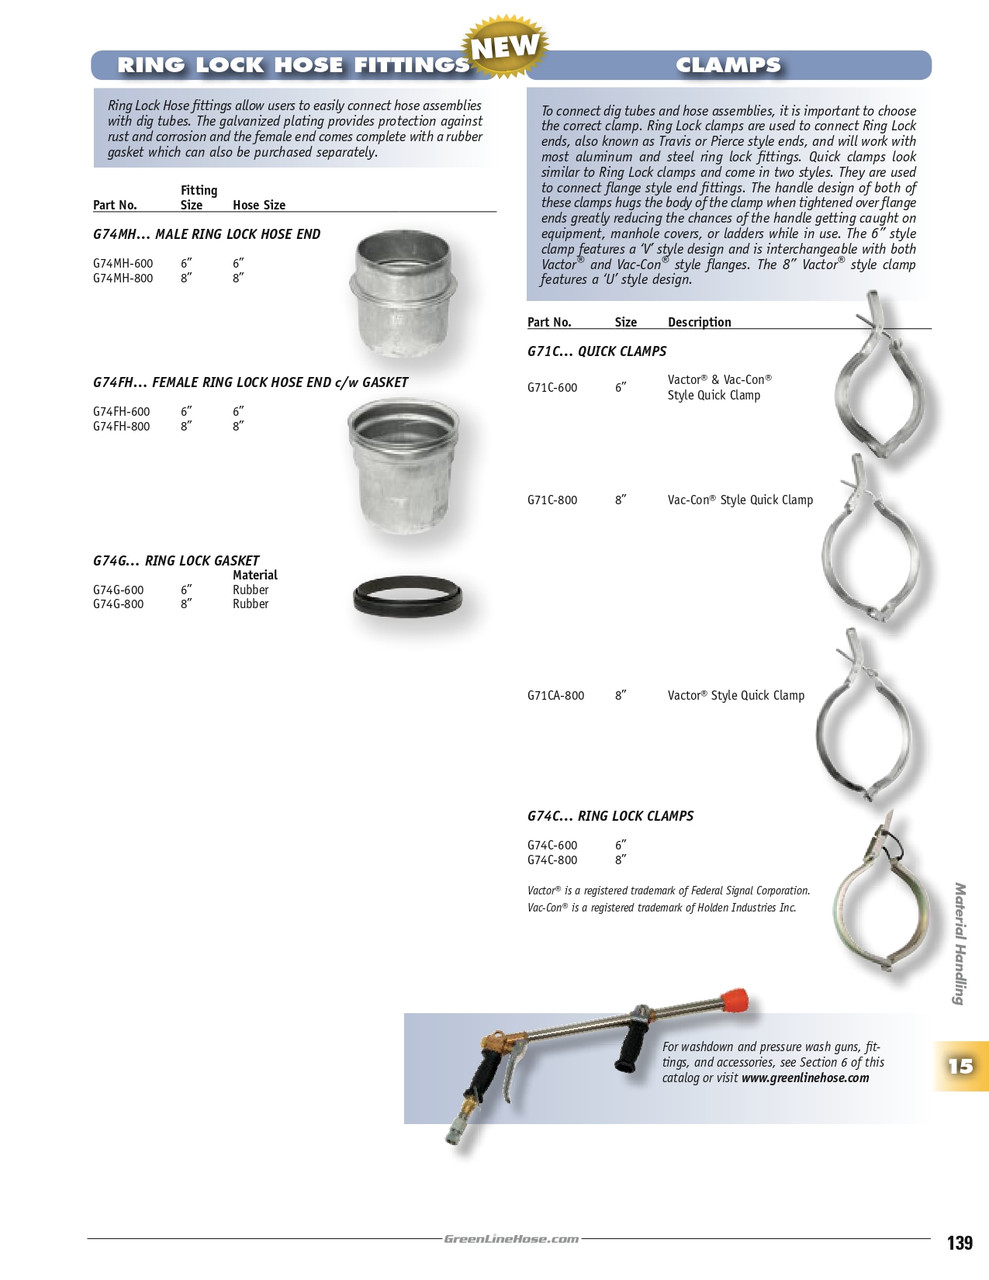 8 x 8" Female Ring Lock Hose End /w Gasket   G74FH-800